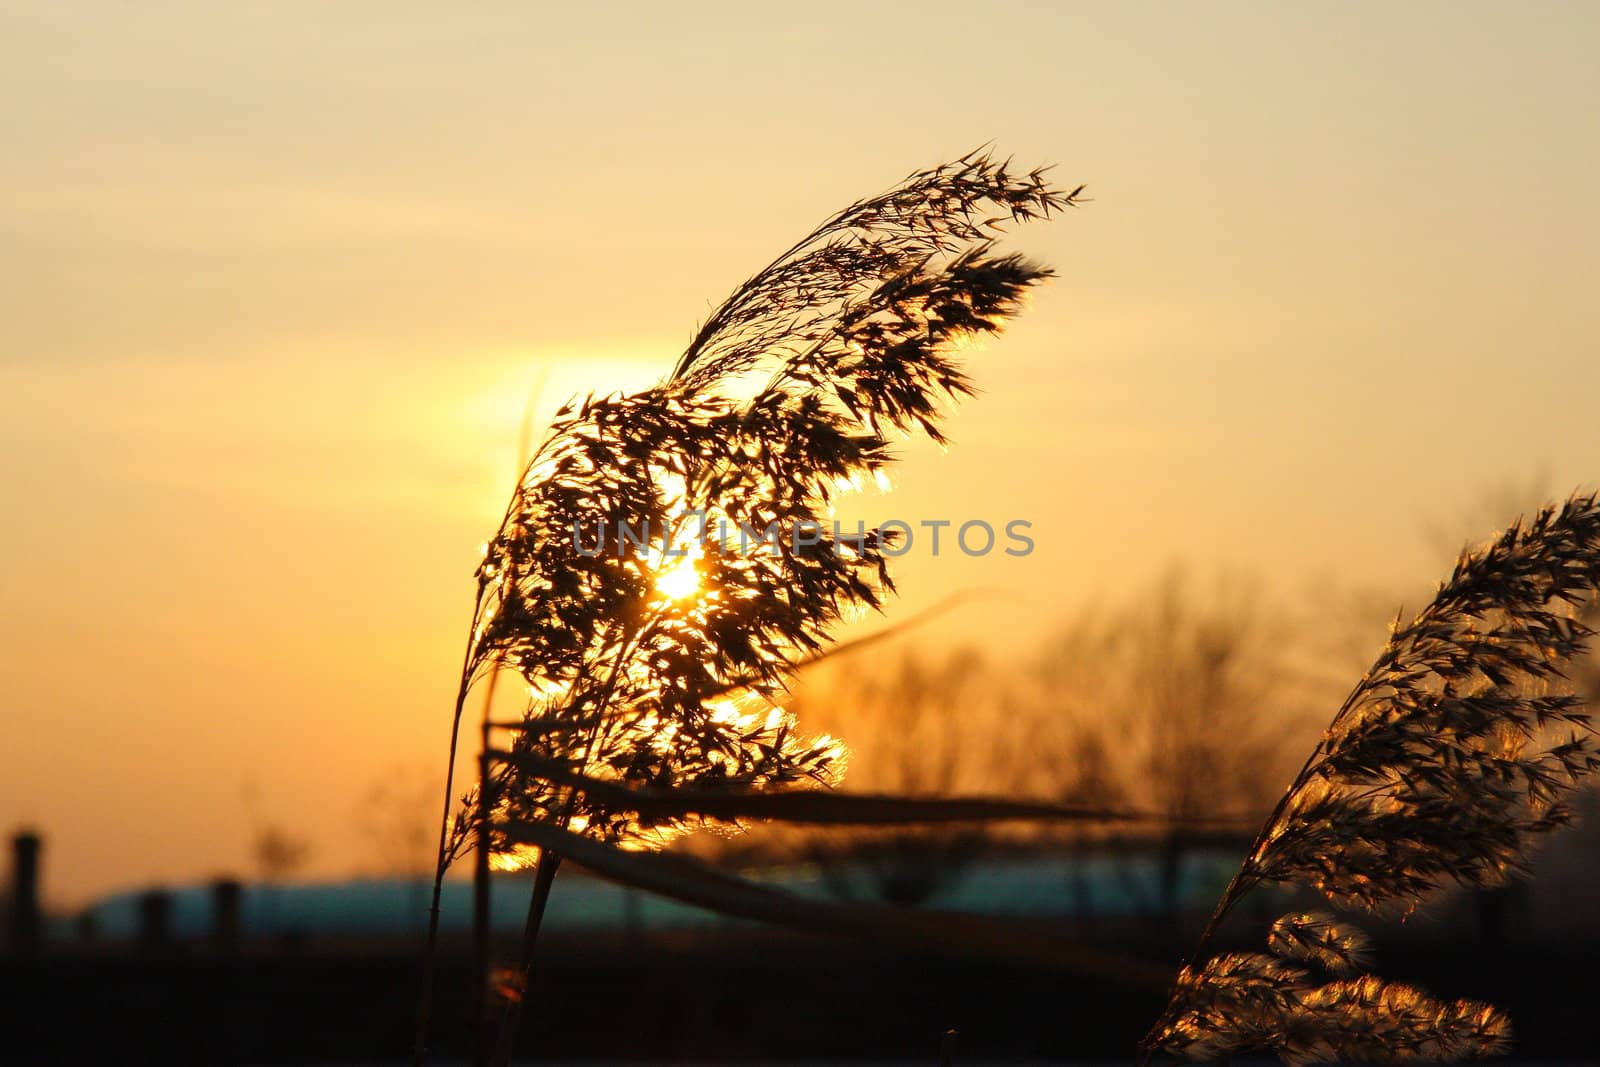 Cane on the sunset by rozhenyuk